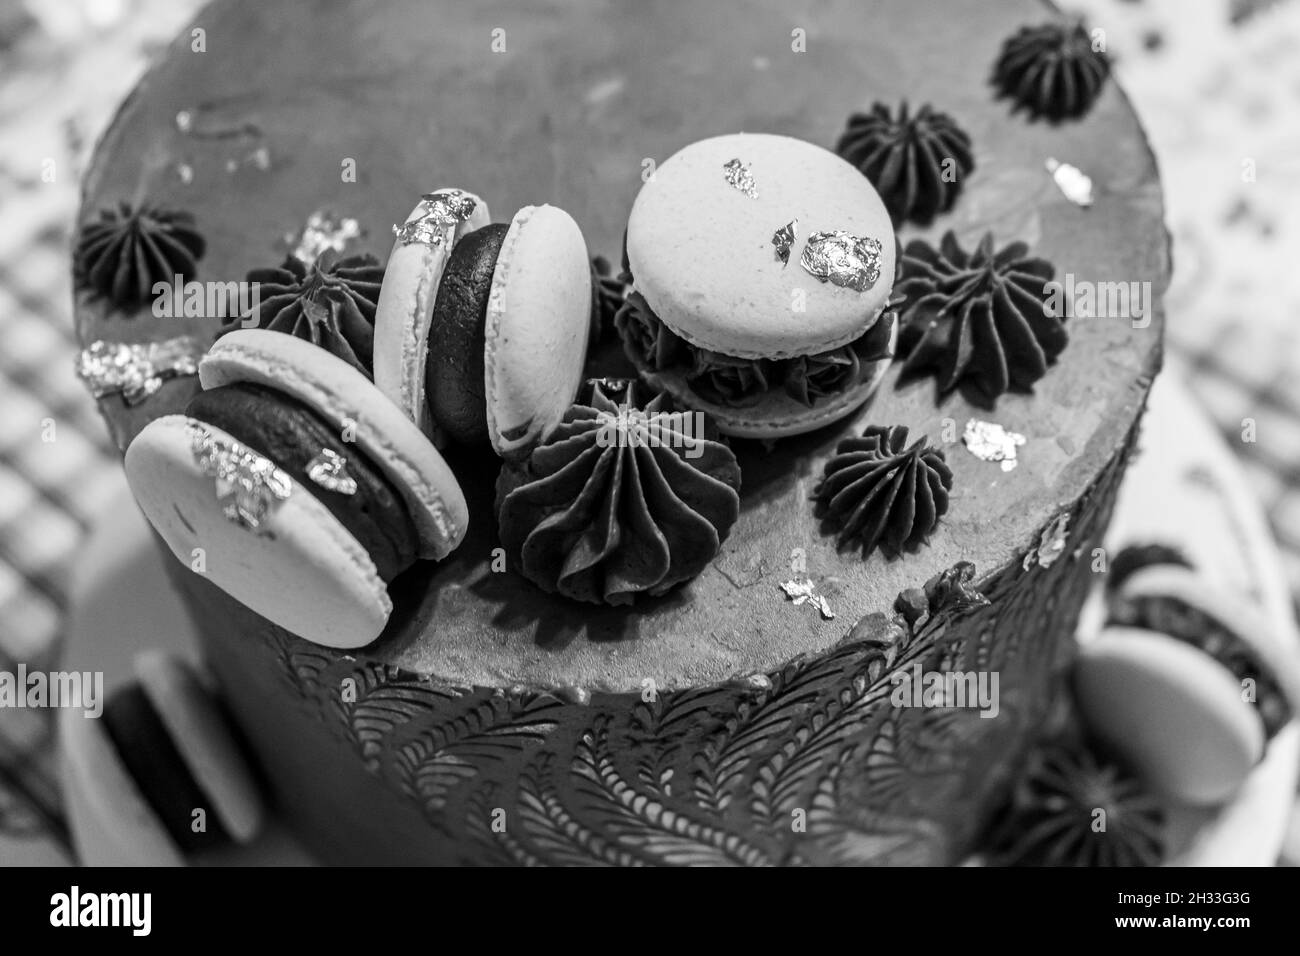 Torta al cioccolato con macaron, in bianco e nero Foto Stock